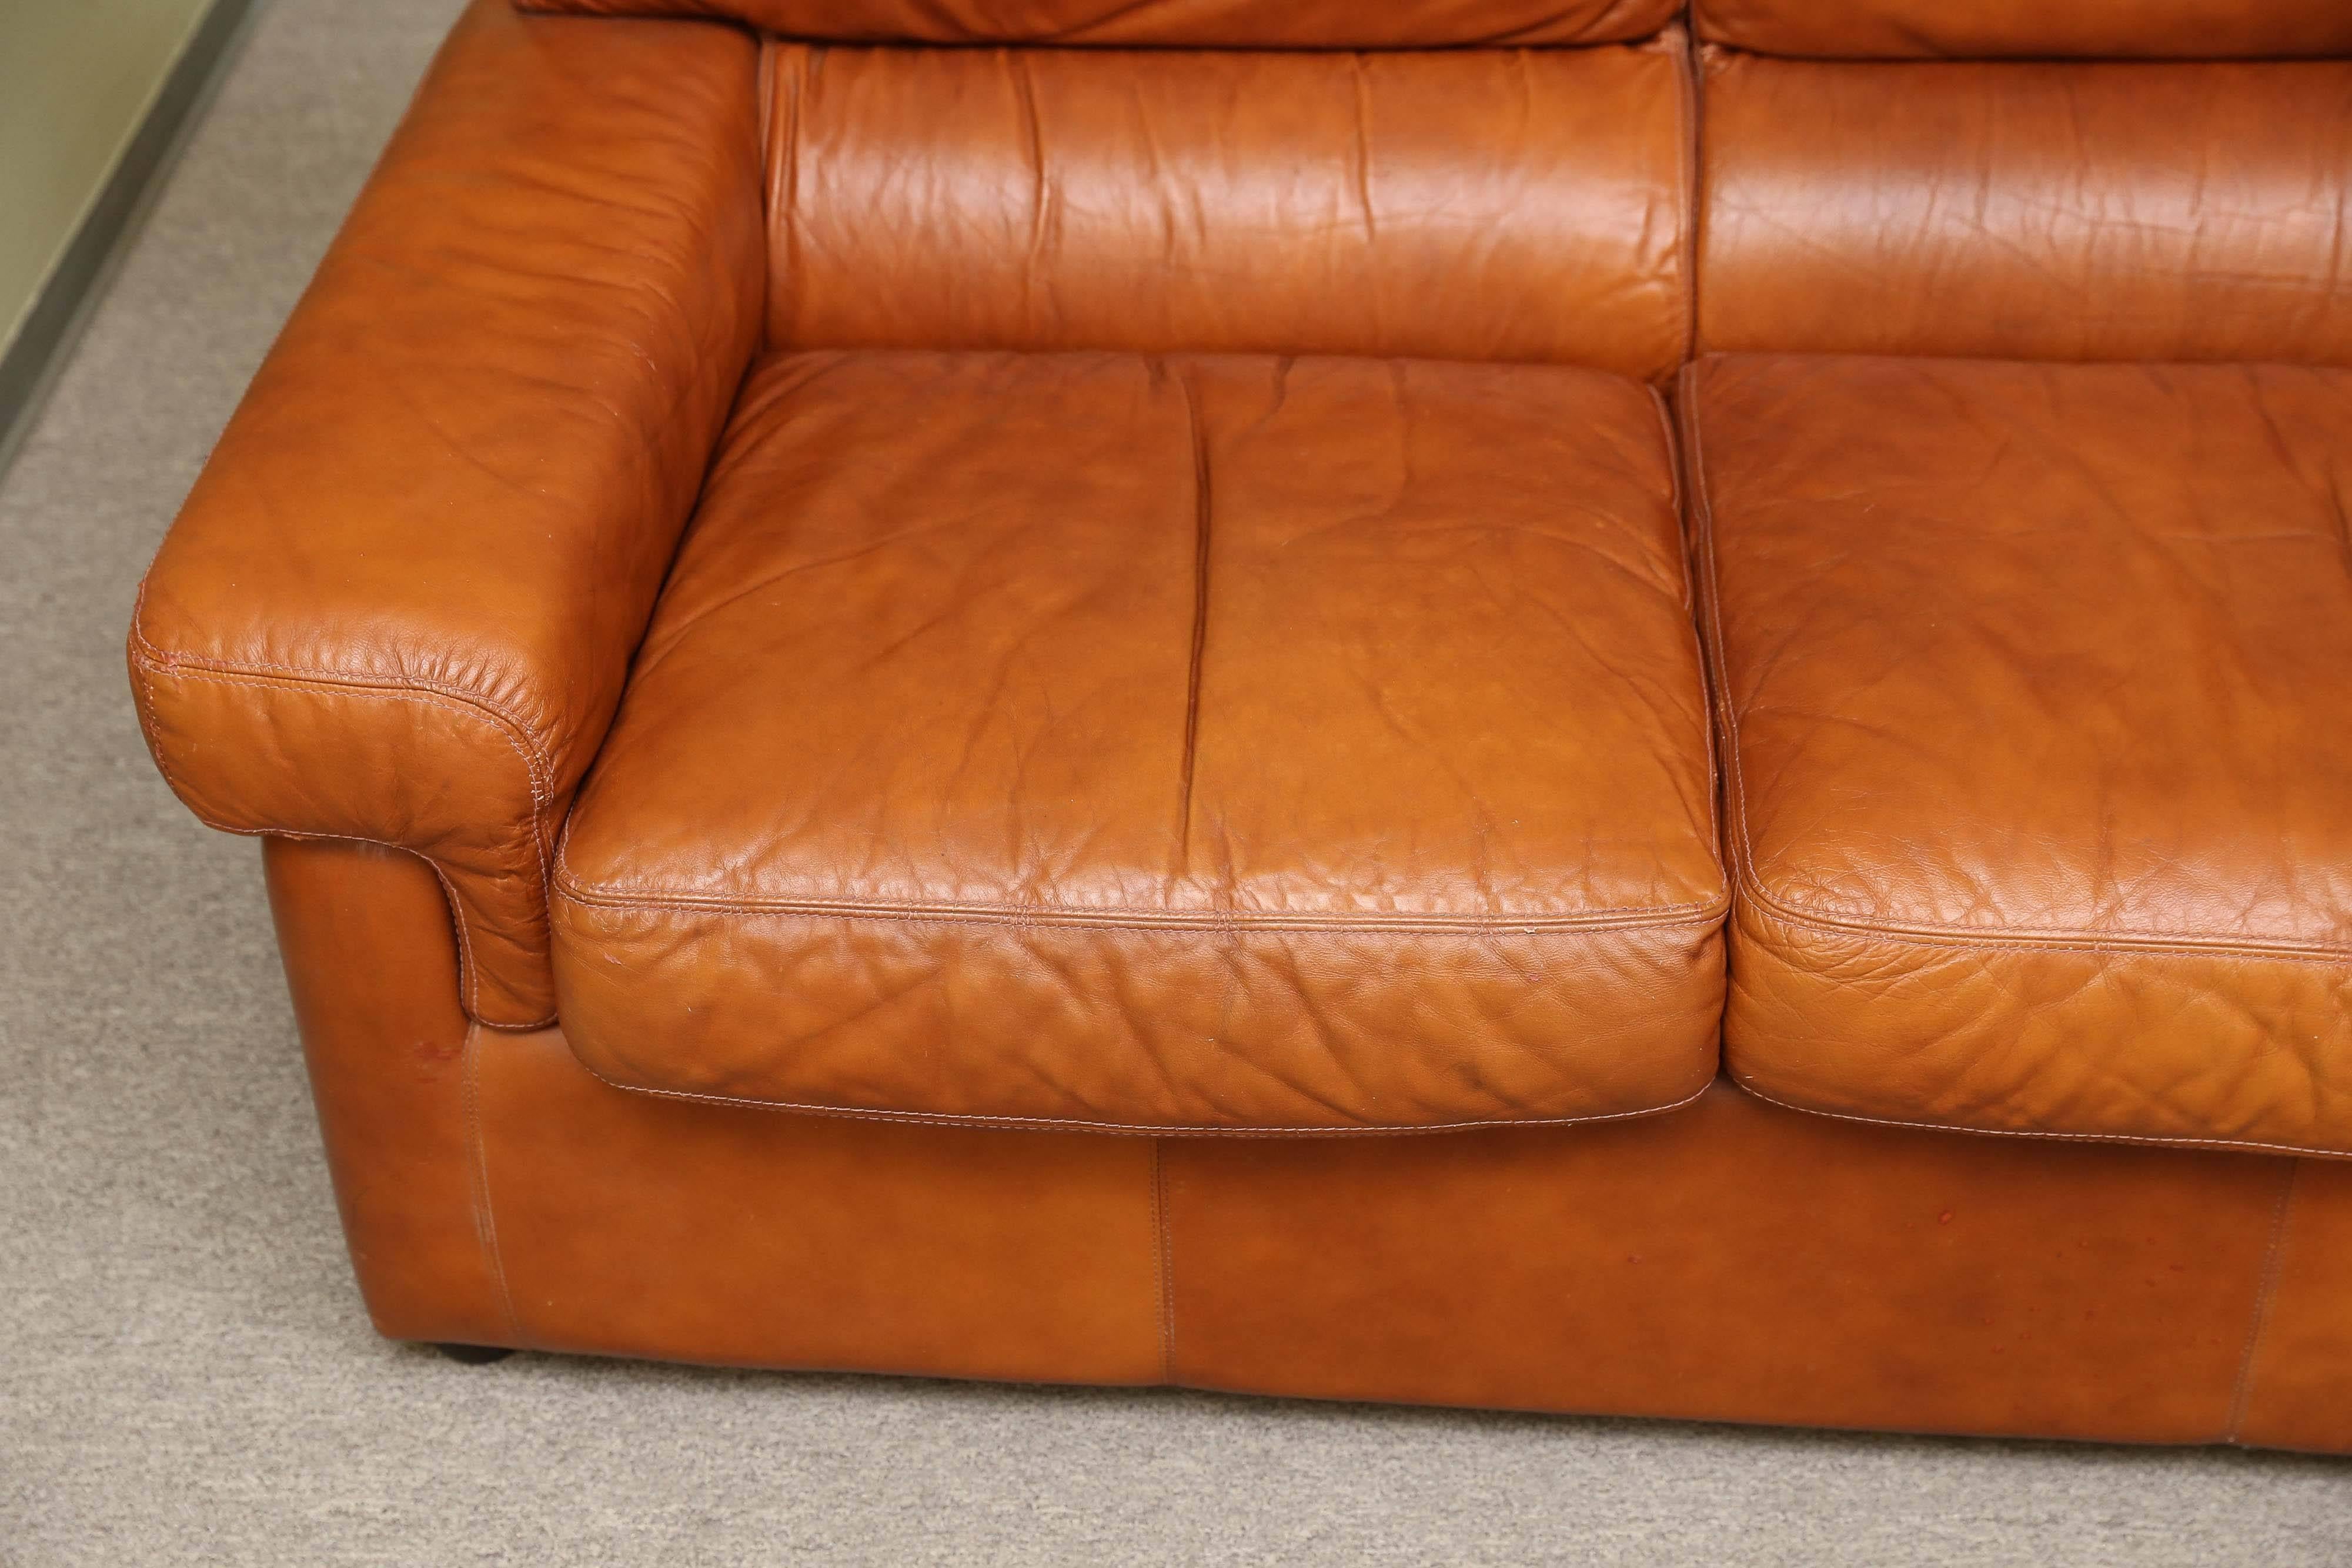 Le canapé est fabriqué en cuir de haute qualité. Le dossier et l'assise du canapé sont composés de trois coussins. Les accoudoirs sont recouverts de cuir et dotés d'un rembourrage souple pour un confort supplémentaire.
Le canapé repose sur de petits